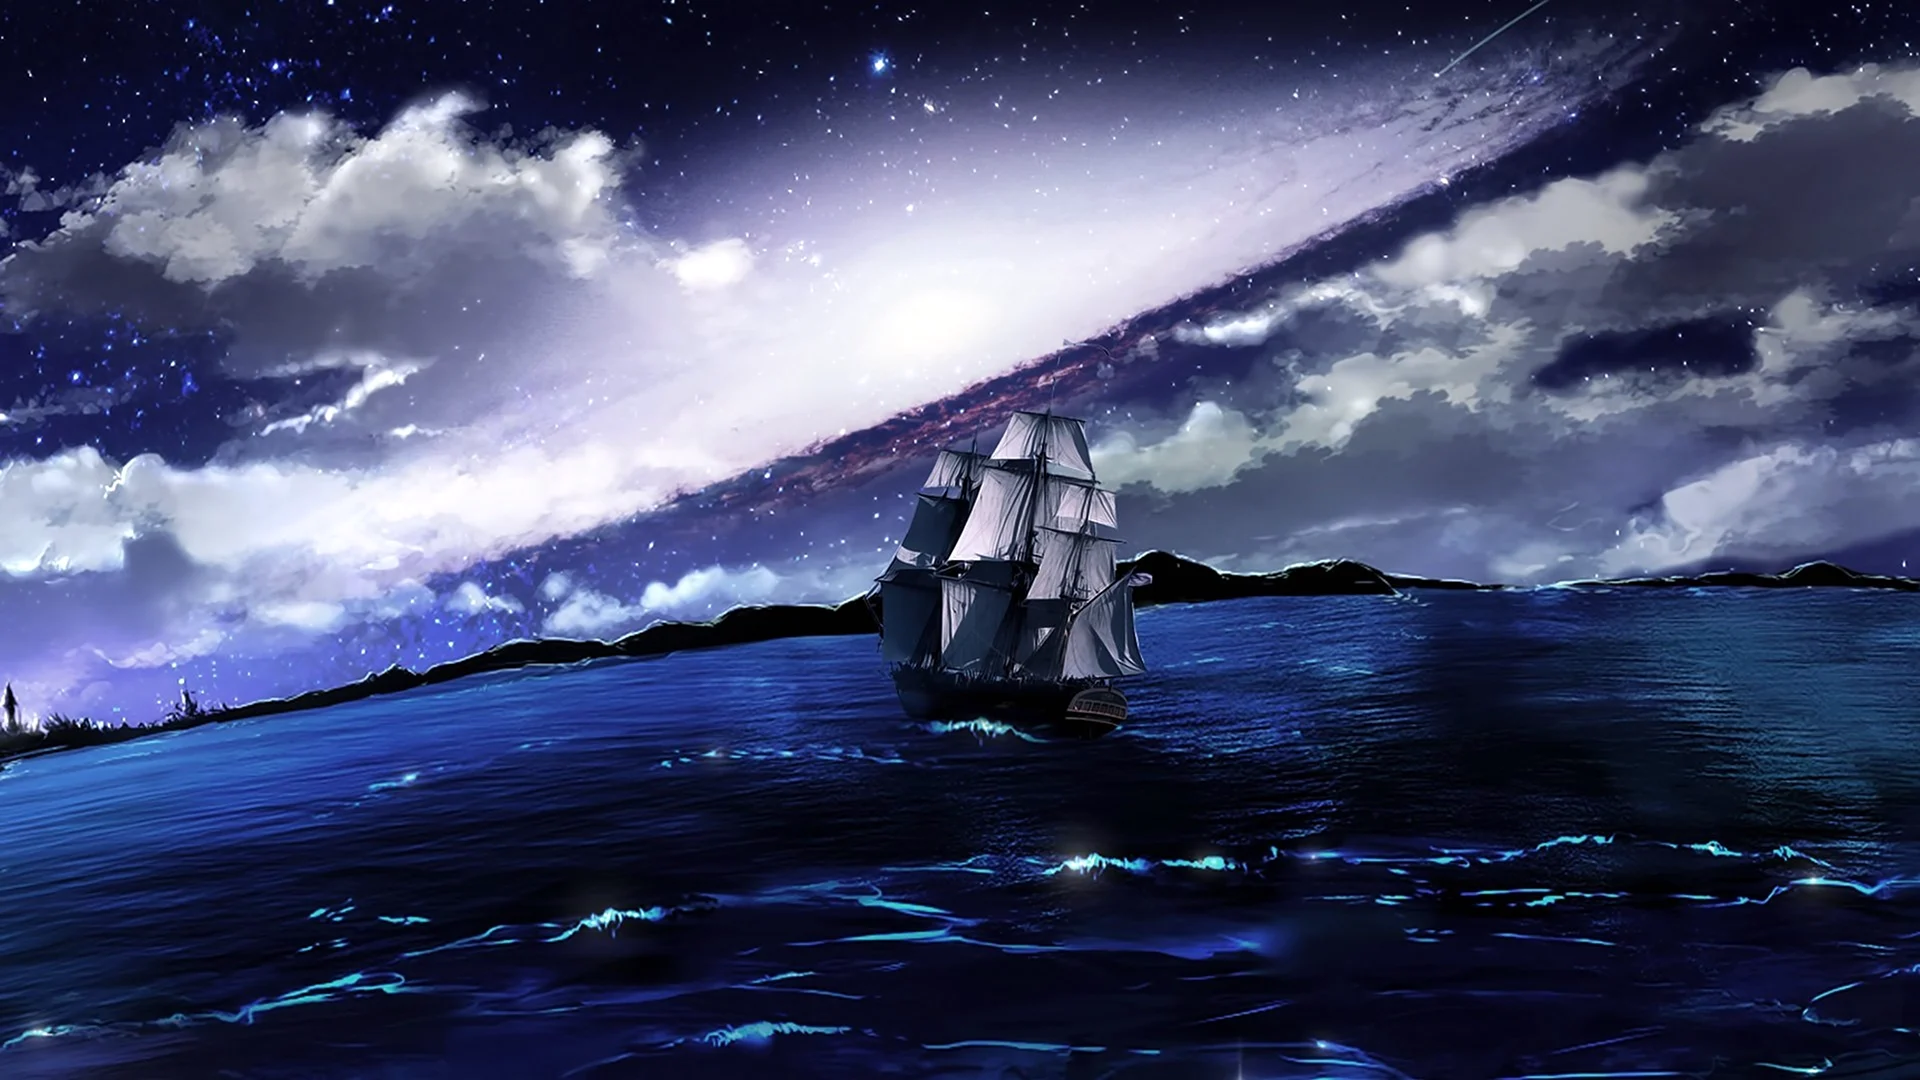 Корабль в море ночью